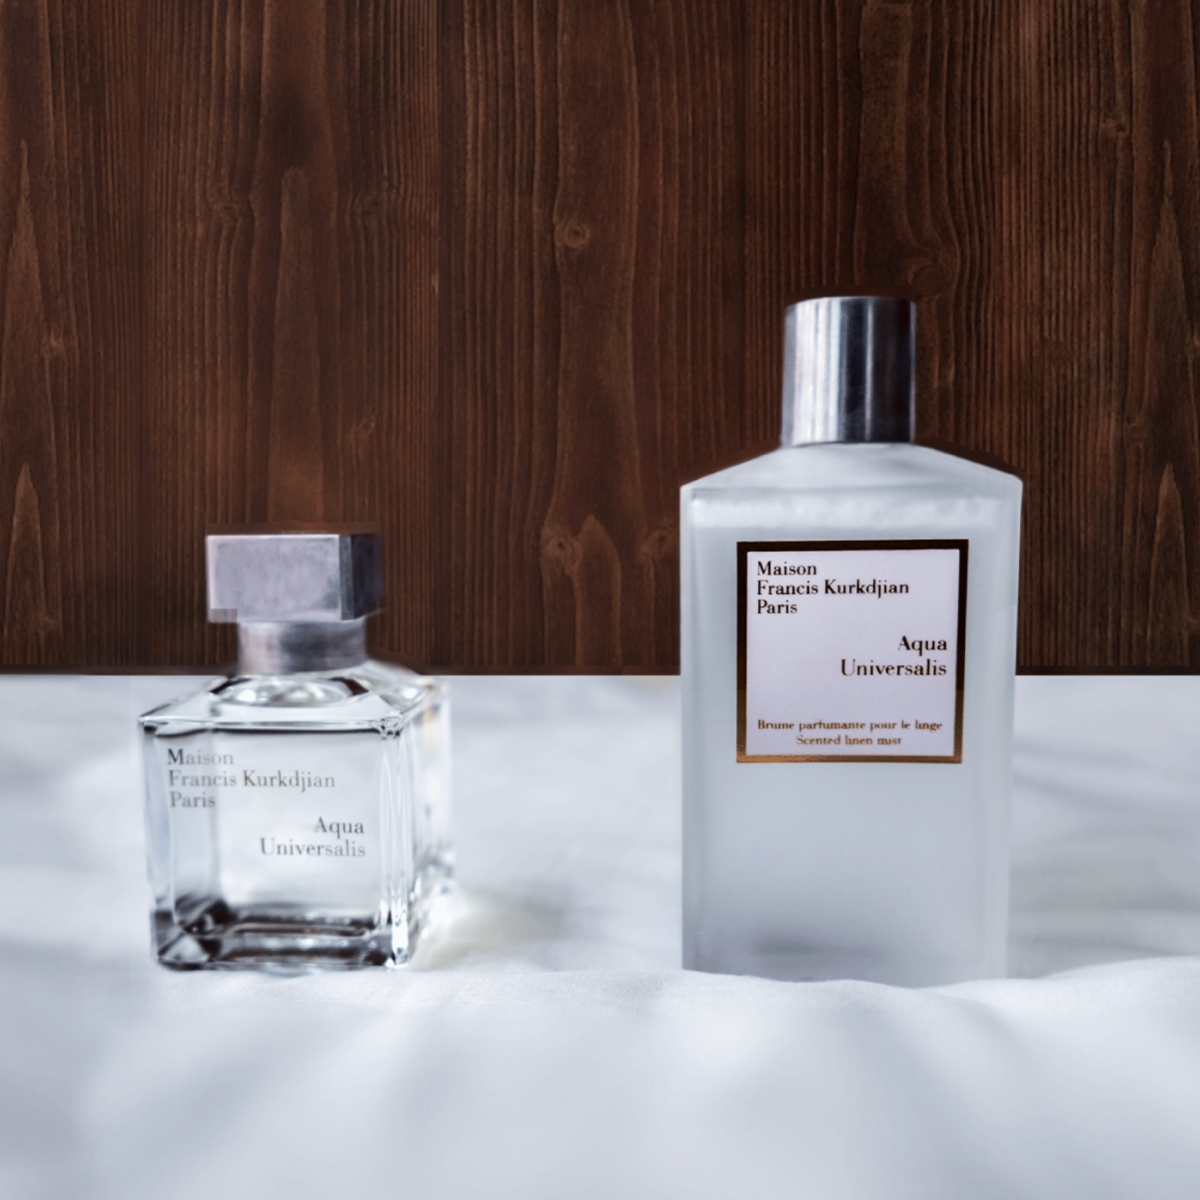 New in: Maison Francis Kurkdjian's linen spray